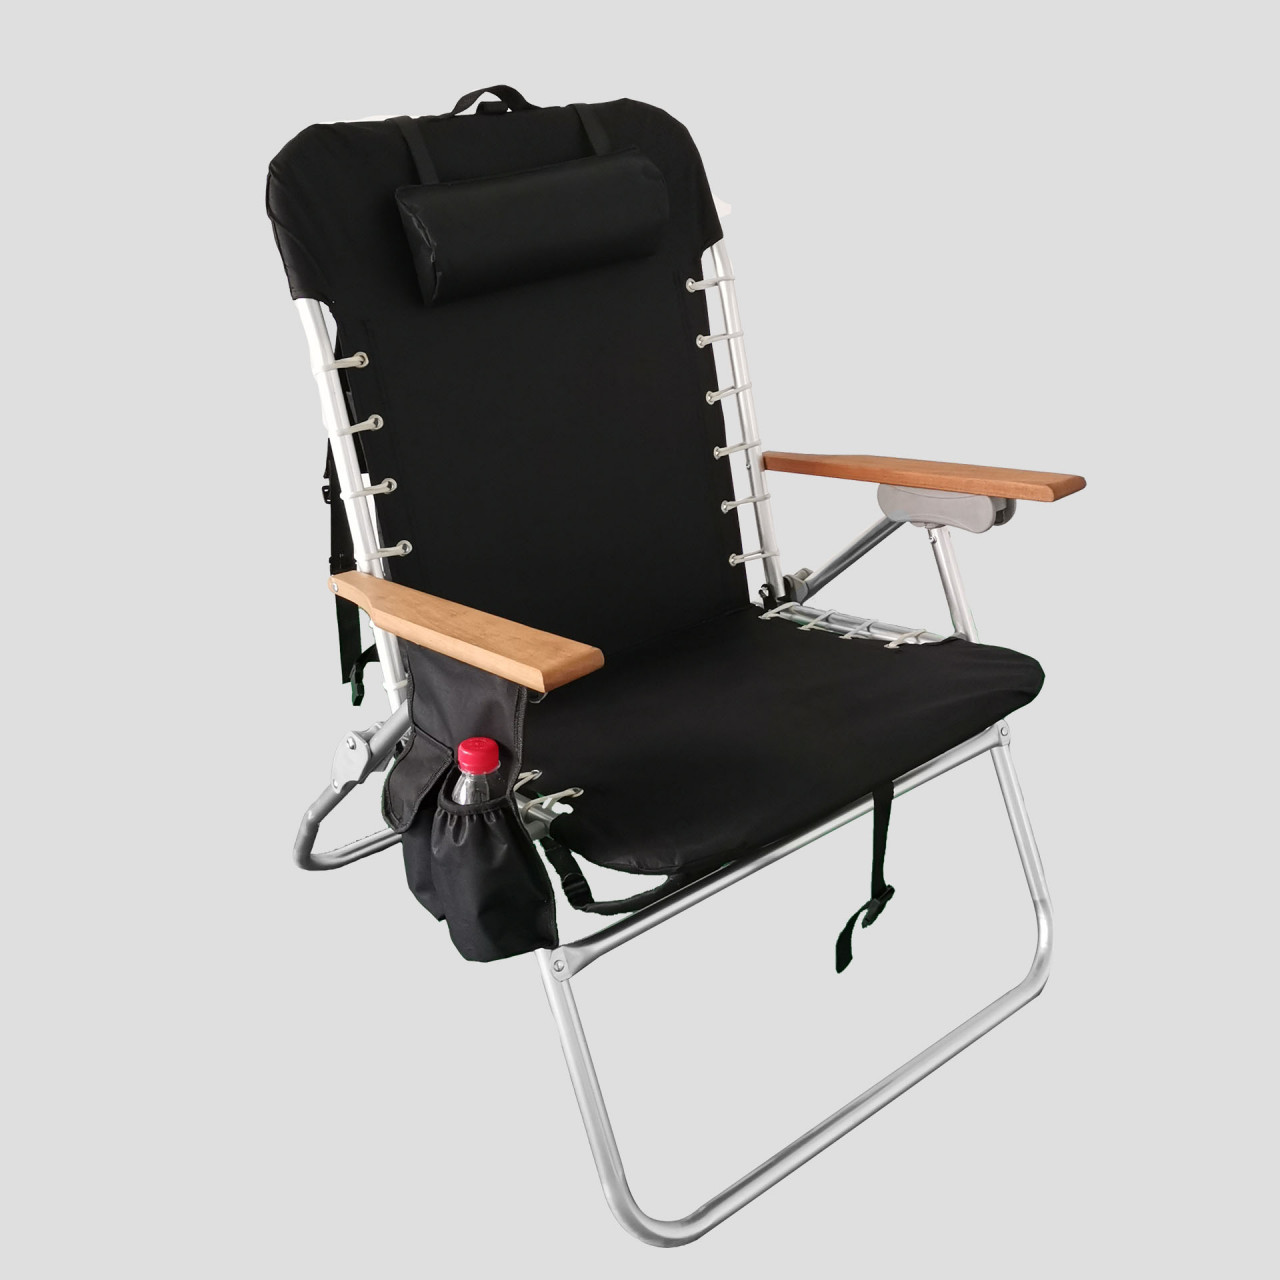 Simple Black And White Beach Chair 